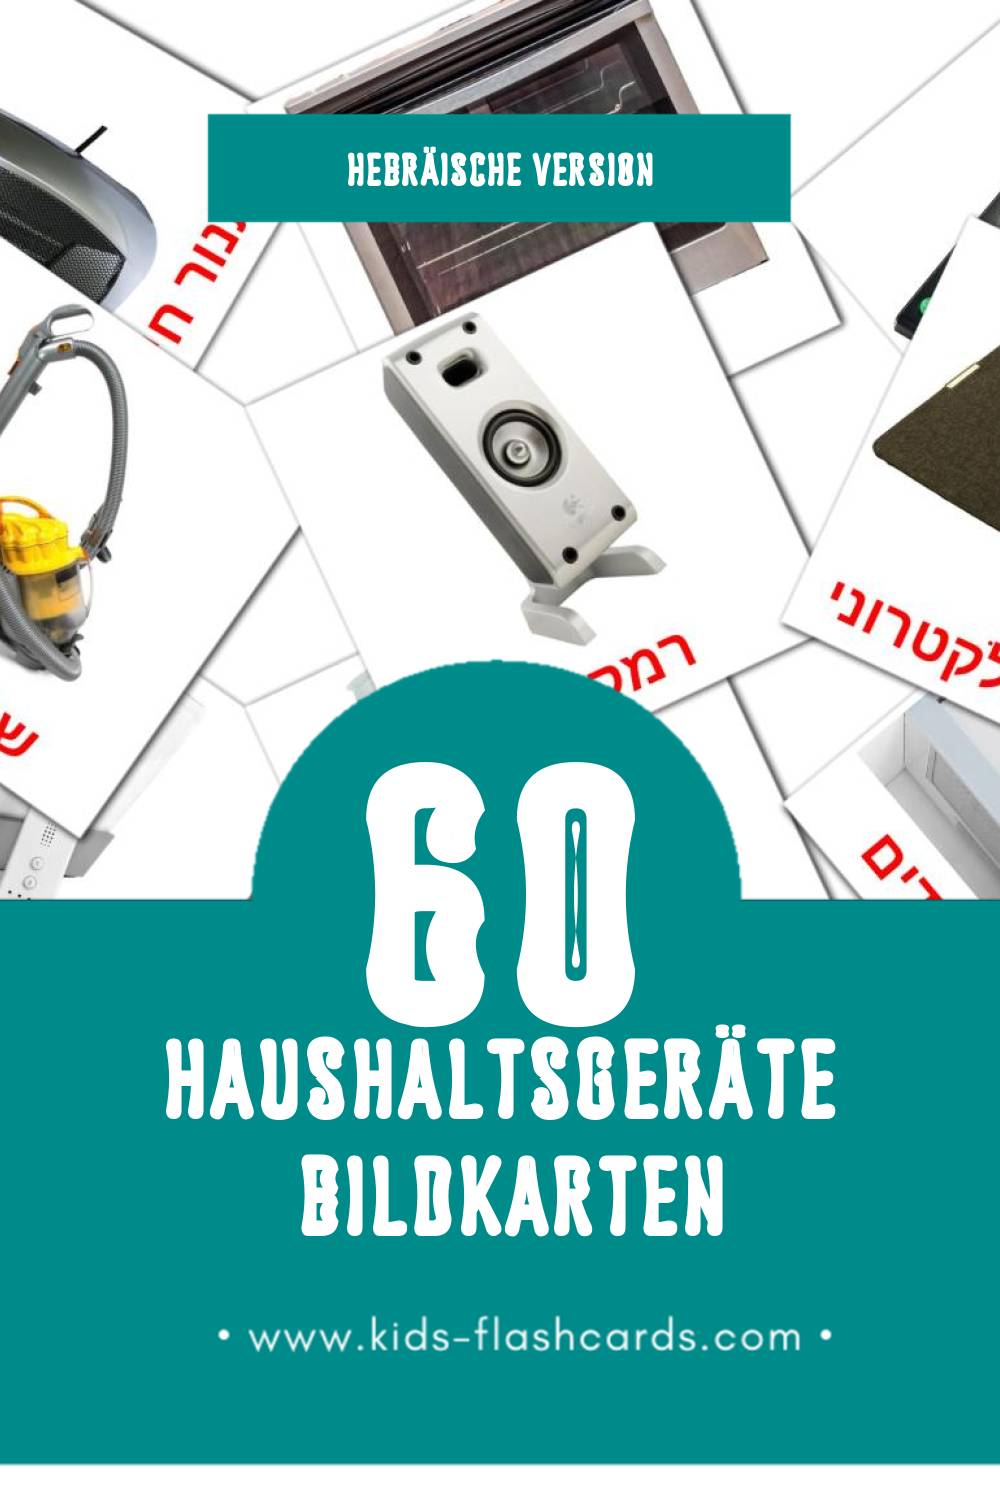 Visual מכשירי חשמל לבית Flashcards für Kleinkinder (60 Karten in Hebräisch)